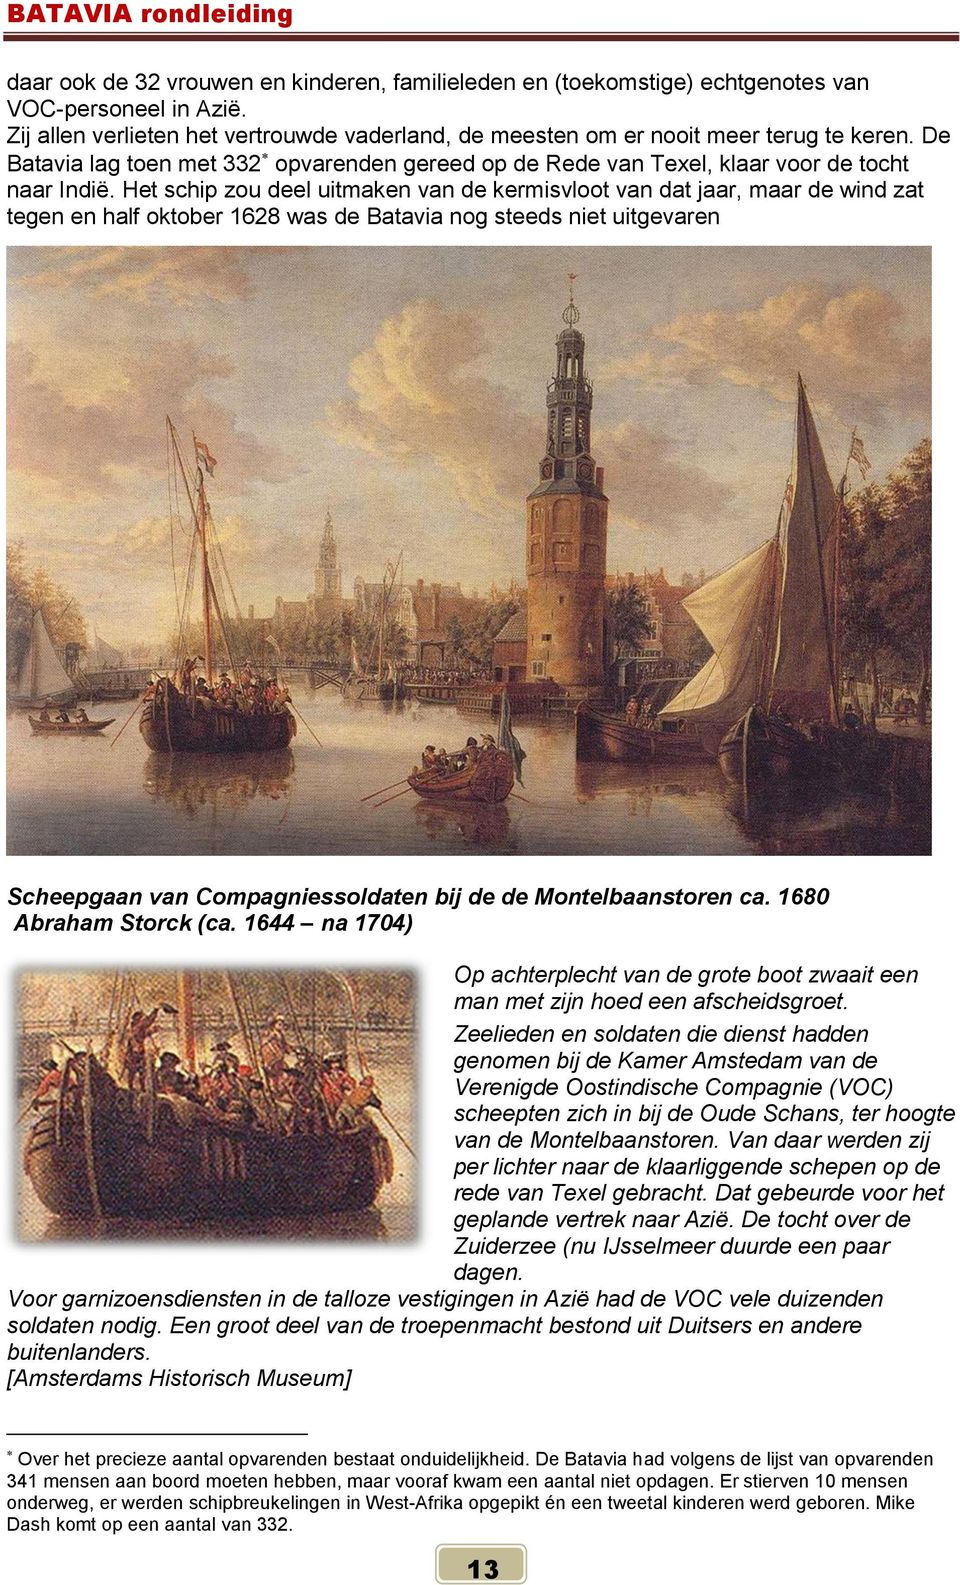 Het schip zou deel uitmaken van de kermisvloot van dat jaar, maar de wind zat tegen en half oktober 1628 was de Batavia nog steeds niet uitgevaren Scheepgaan van Compagniessoldaten bij de de